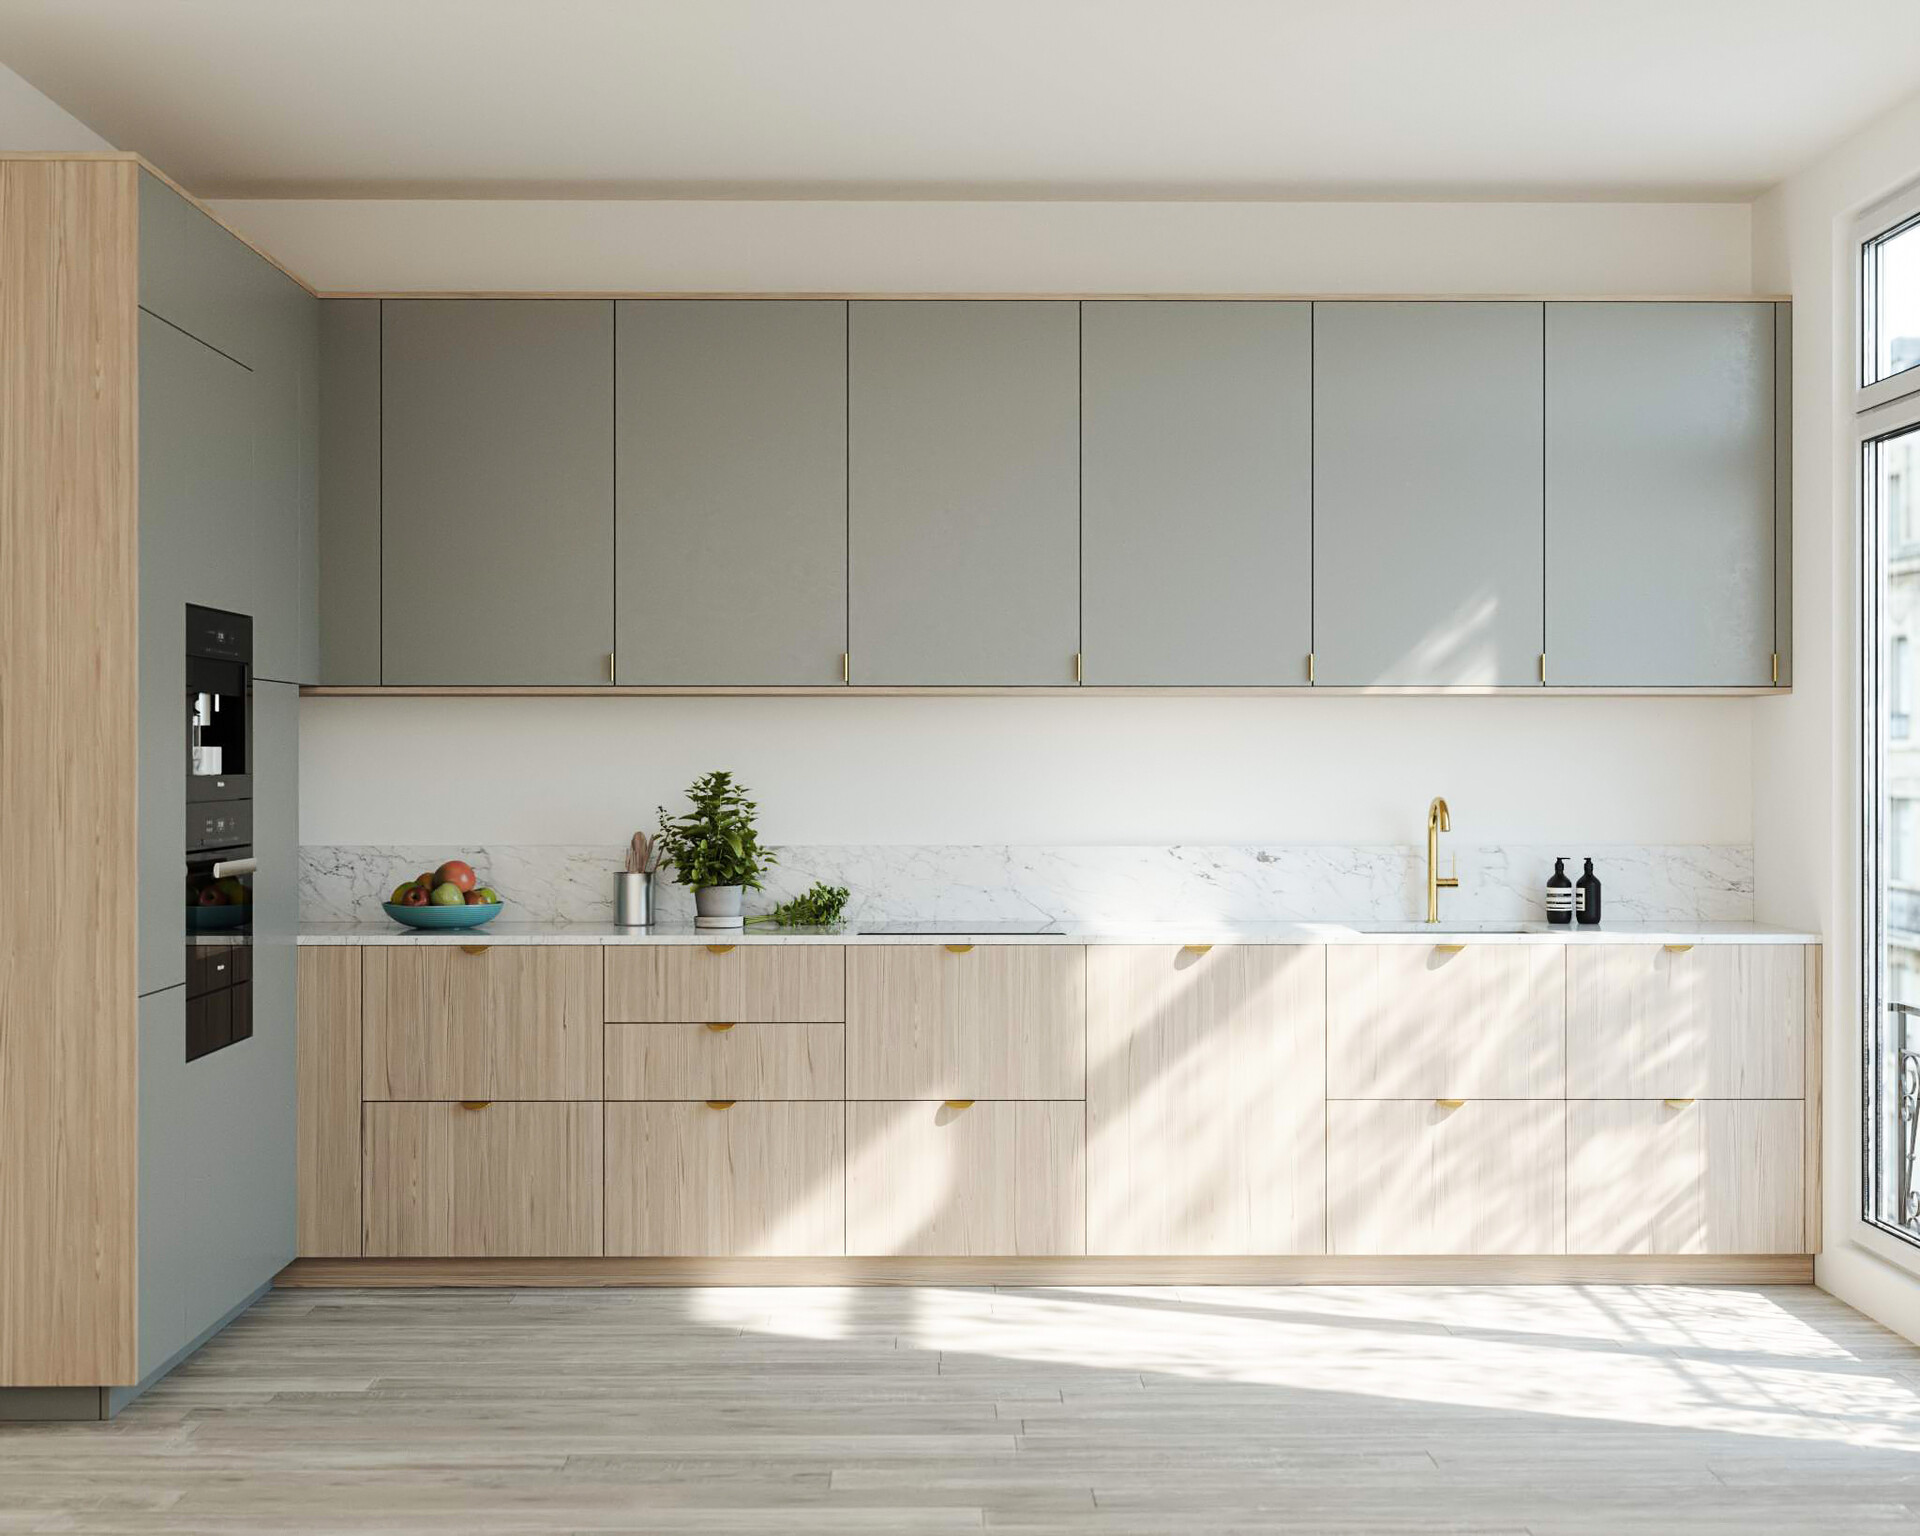 Dapur minimalis dengan warna dasar putih